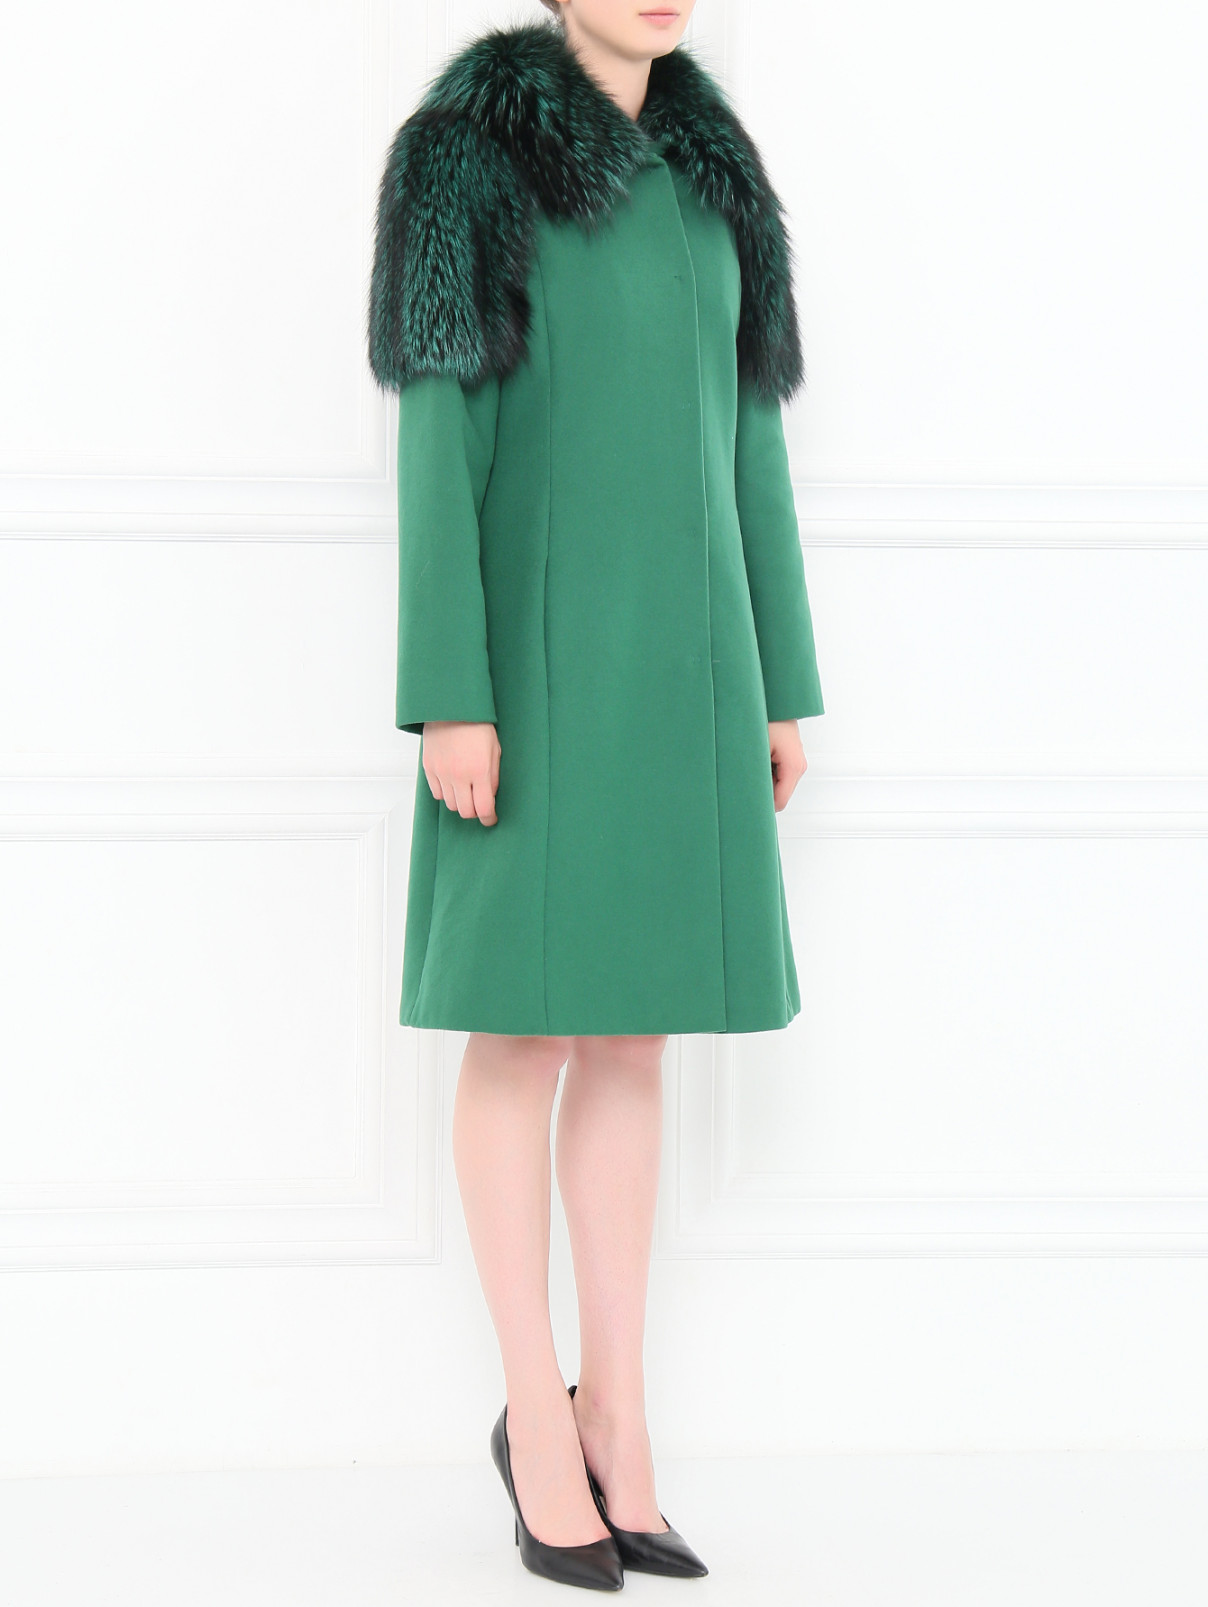 Пальто из шерсти декорированное на рукавах и вороте мехом лисы Alberta Ferretti  –  Модель Общий вид  – Цвет:  Зеленый